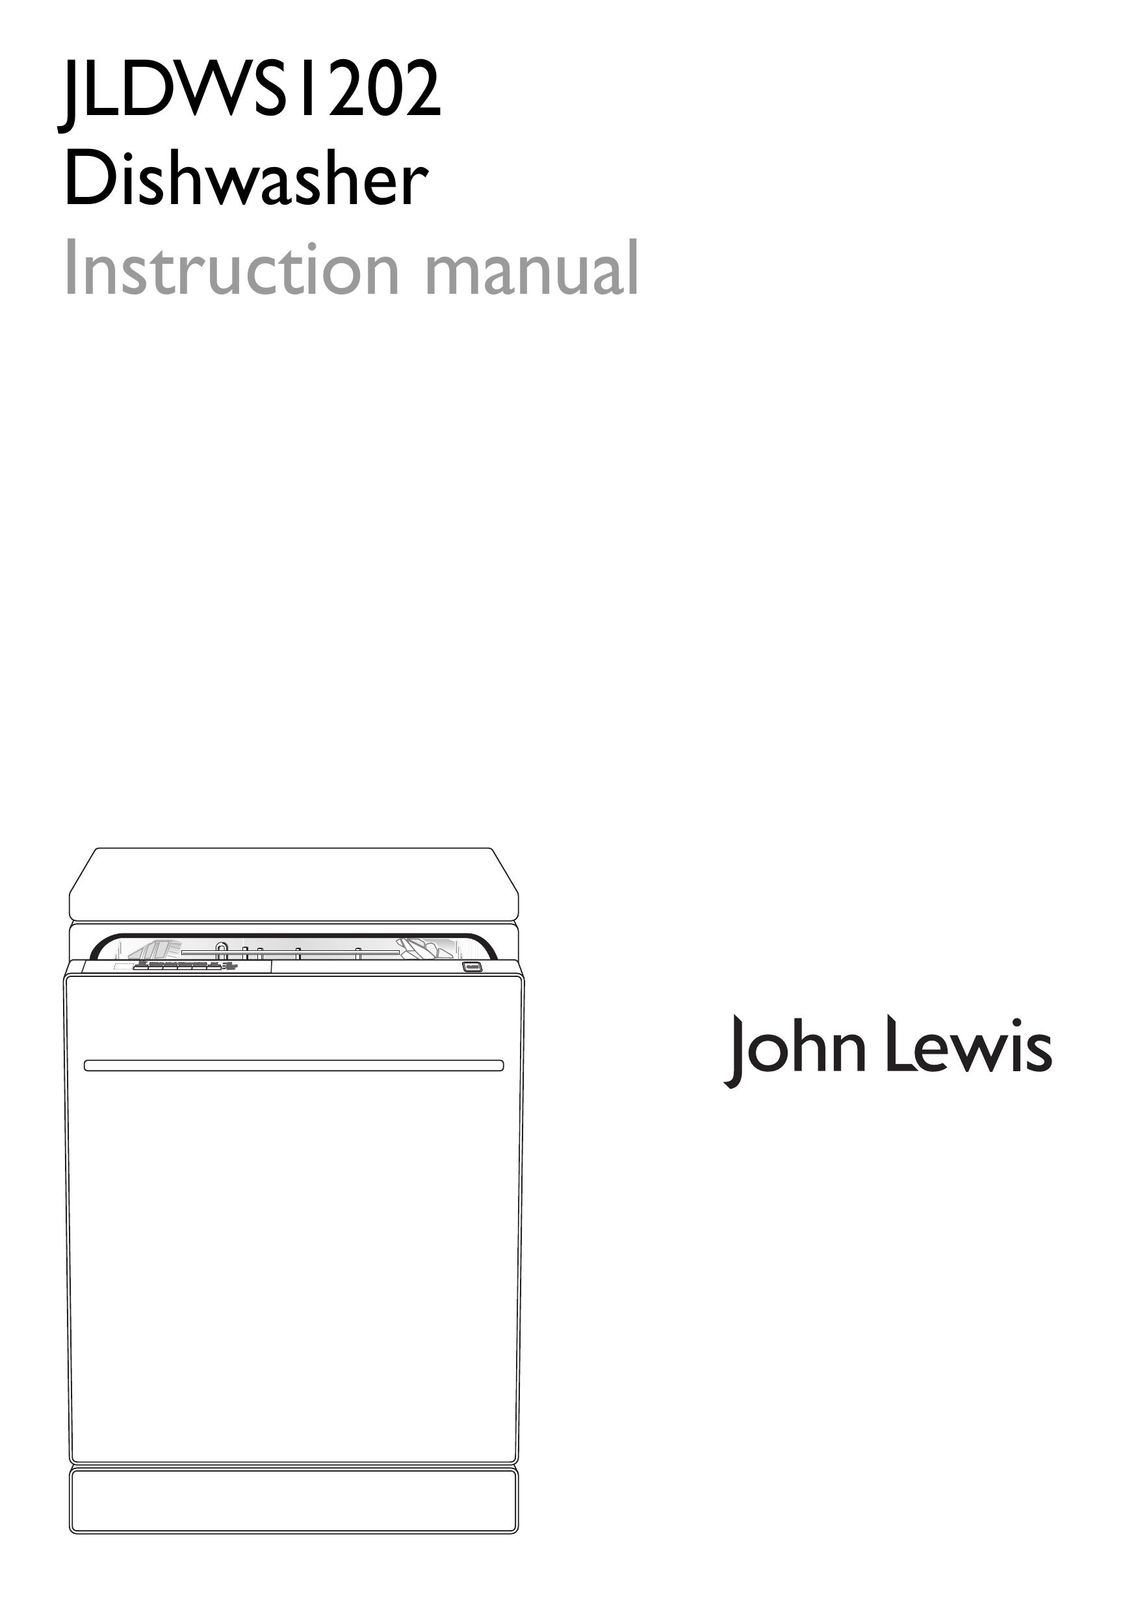 John Lewis JLDWS1202 Dishwasher User Manual